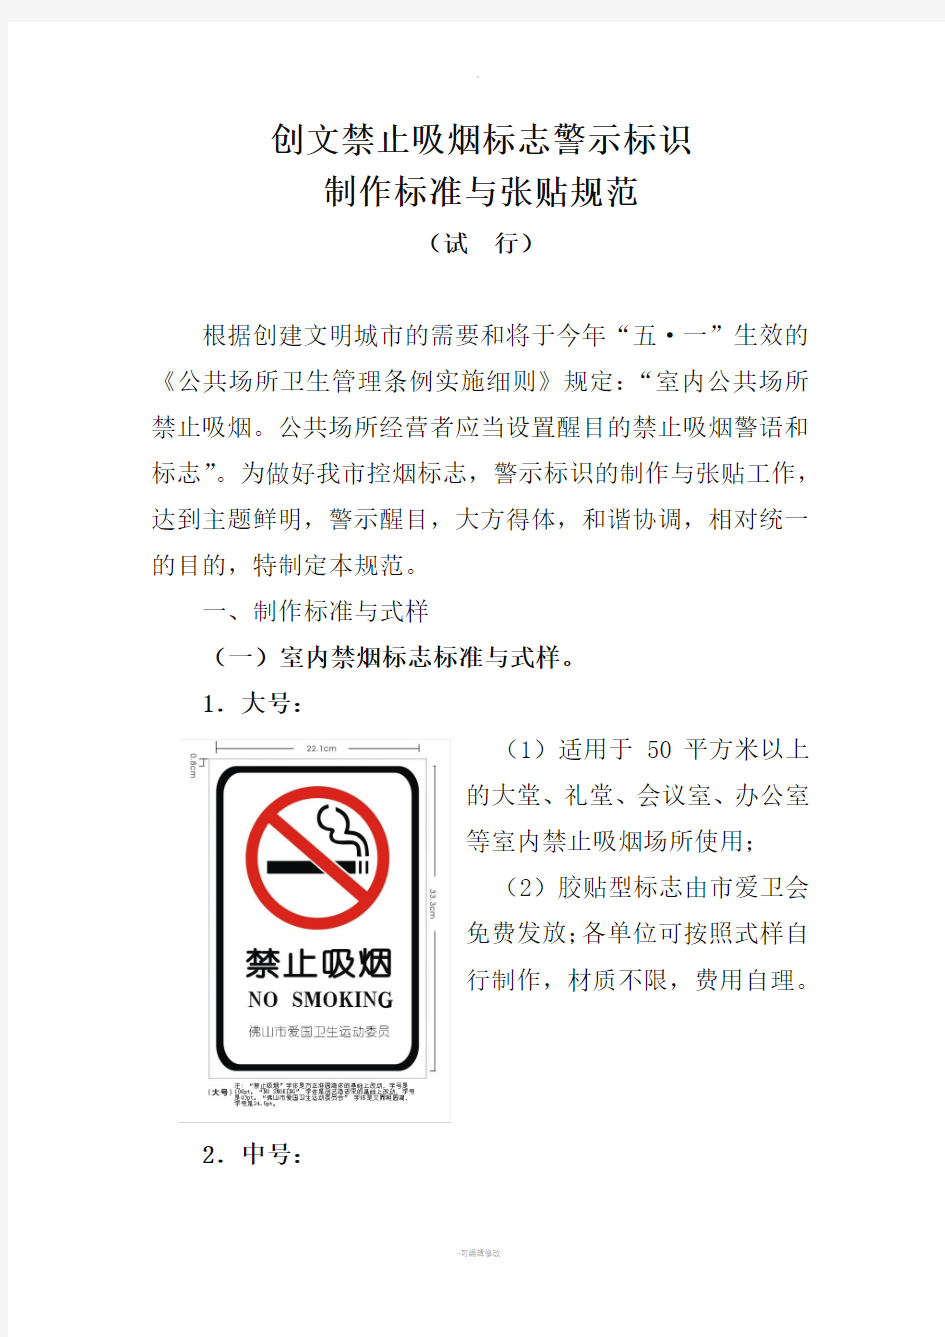 创文禁止吸烟标志警示标识制作标准与张贴规范